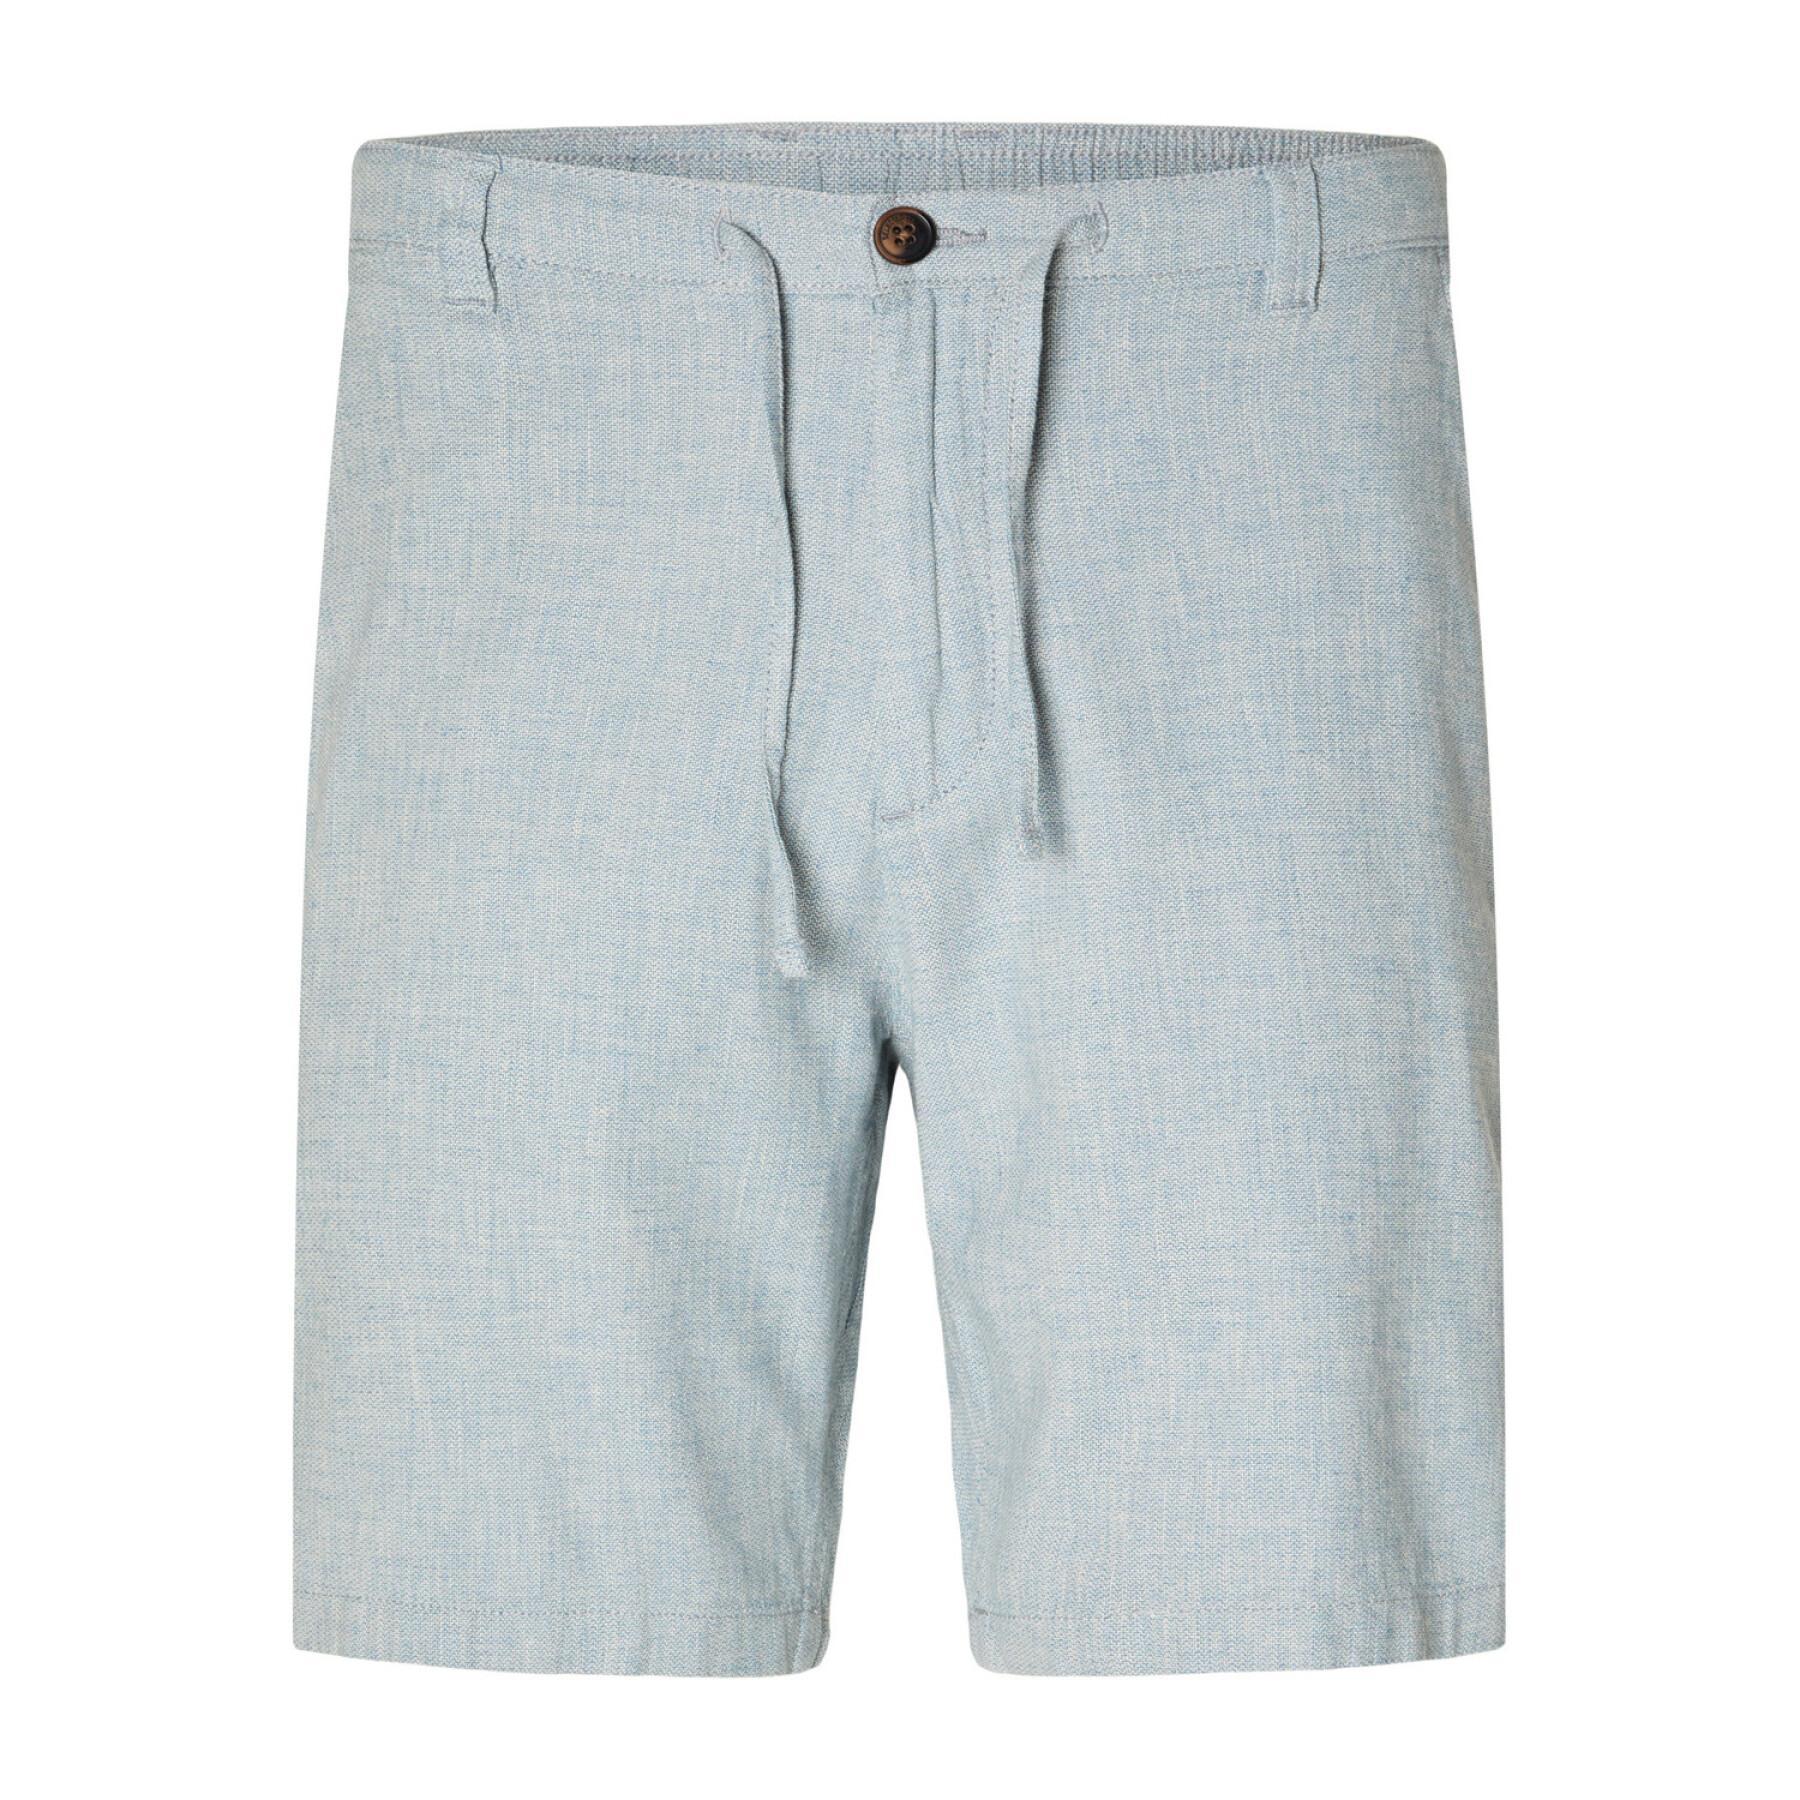 Linnen shorts Selected Regular-brody